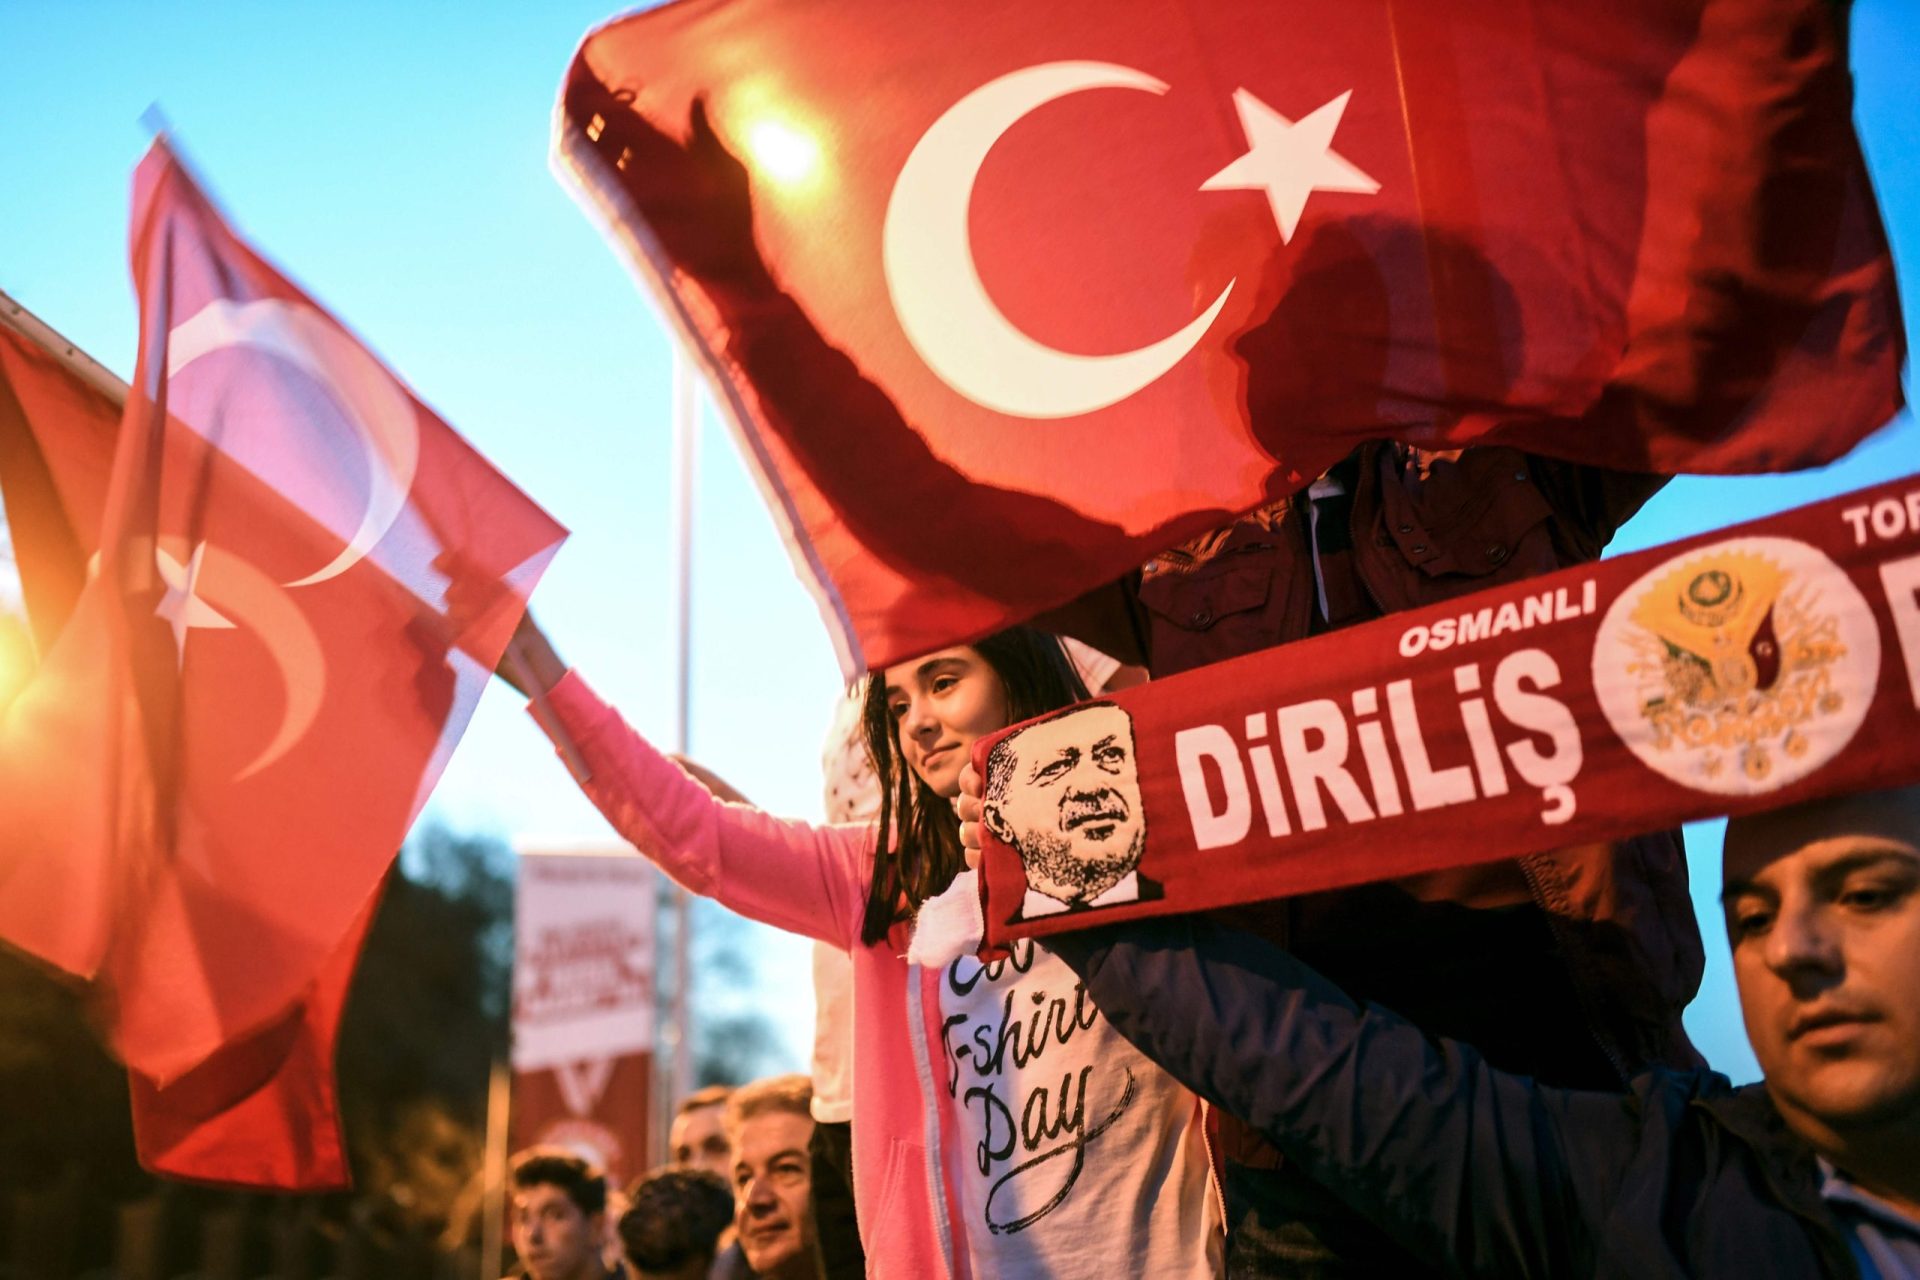 Referendo. Coroação de Erdogan acentua fratura turca